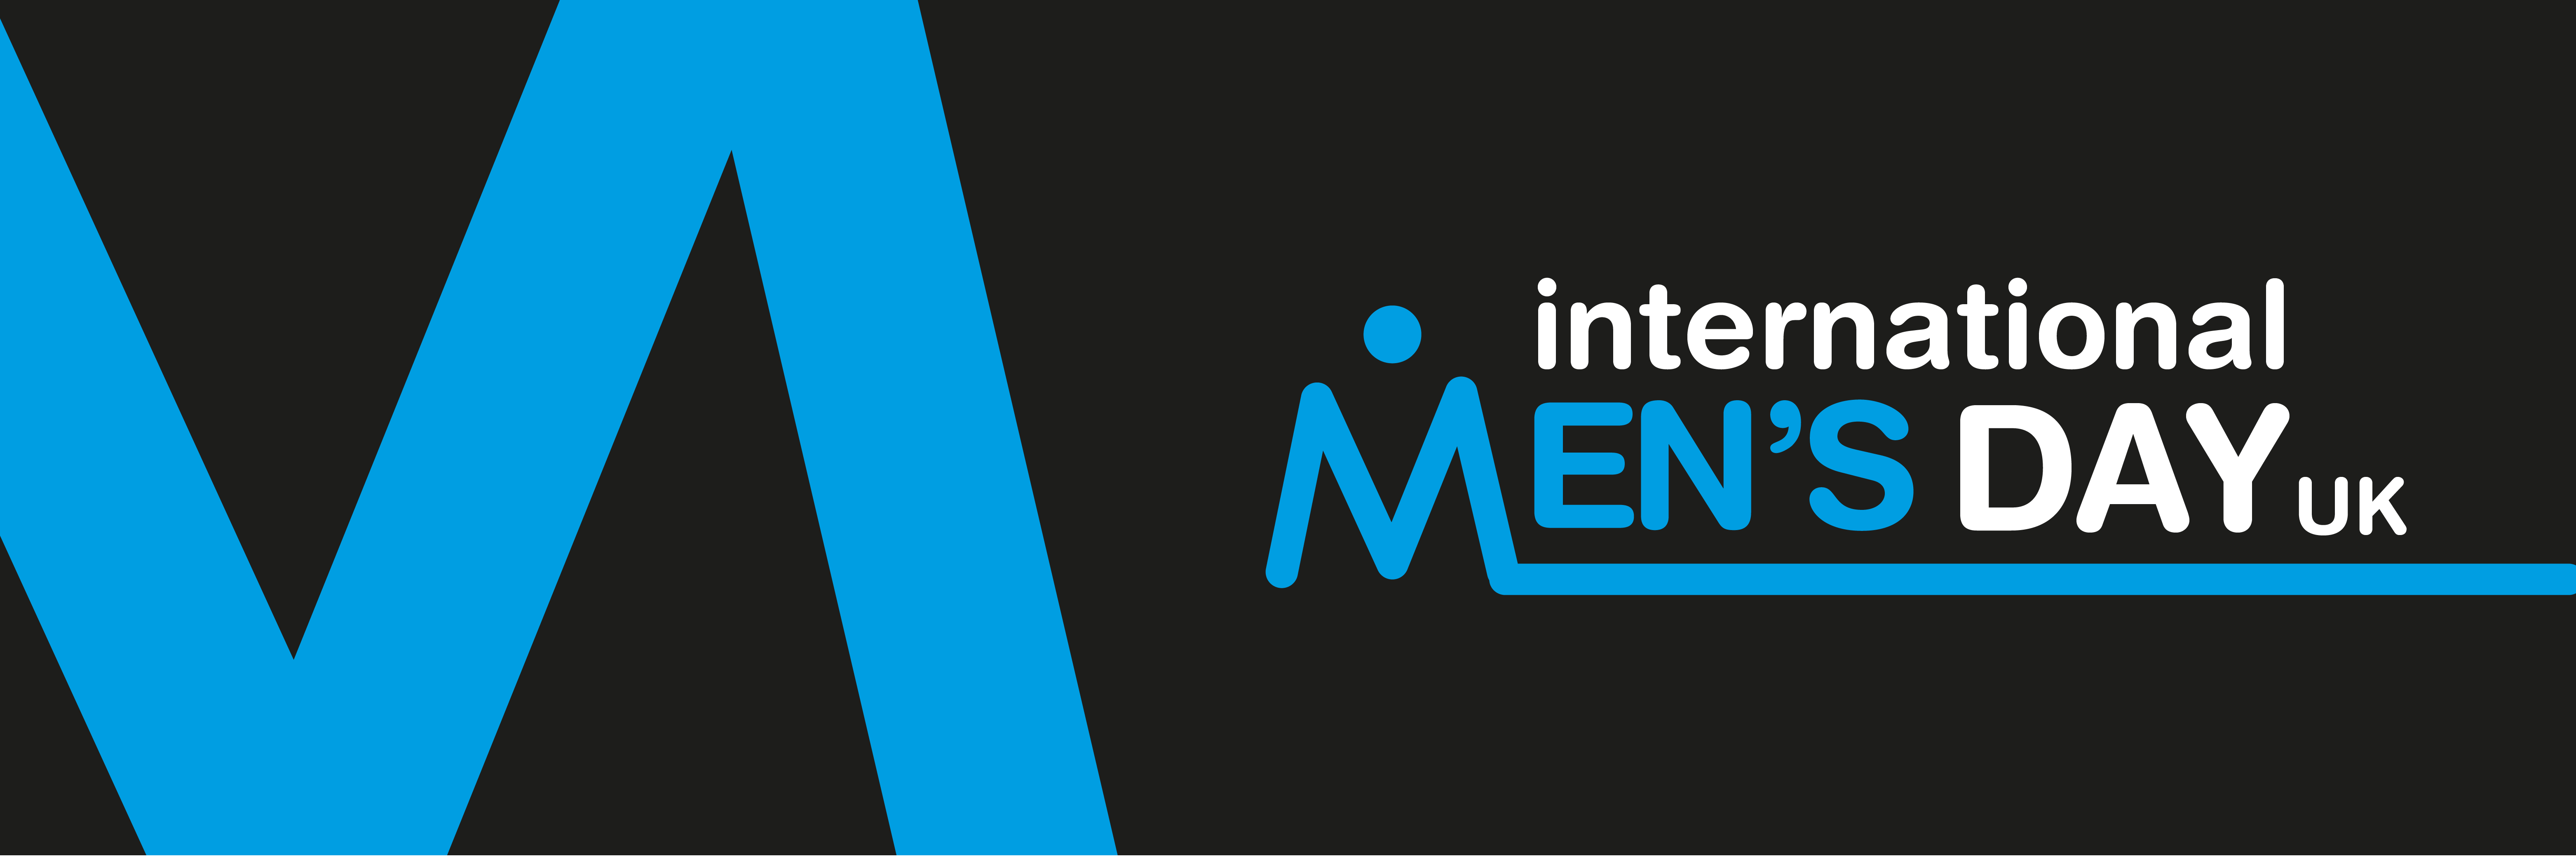 International Men's Day UK Twitter Cover Image 1